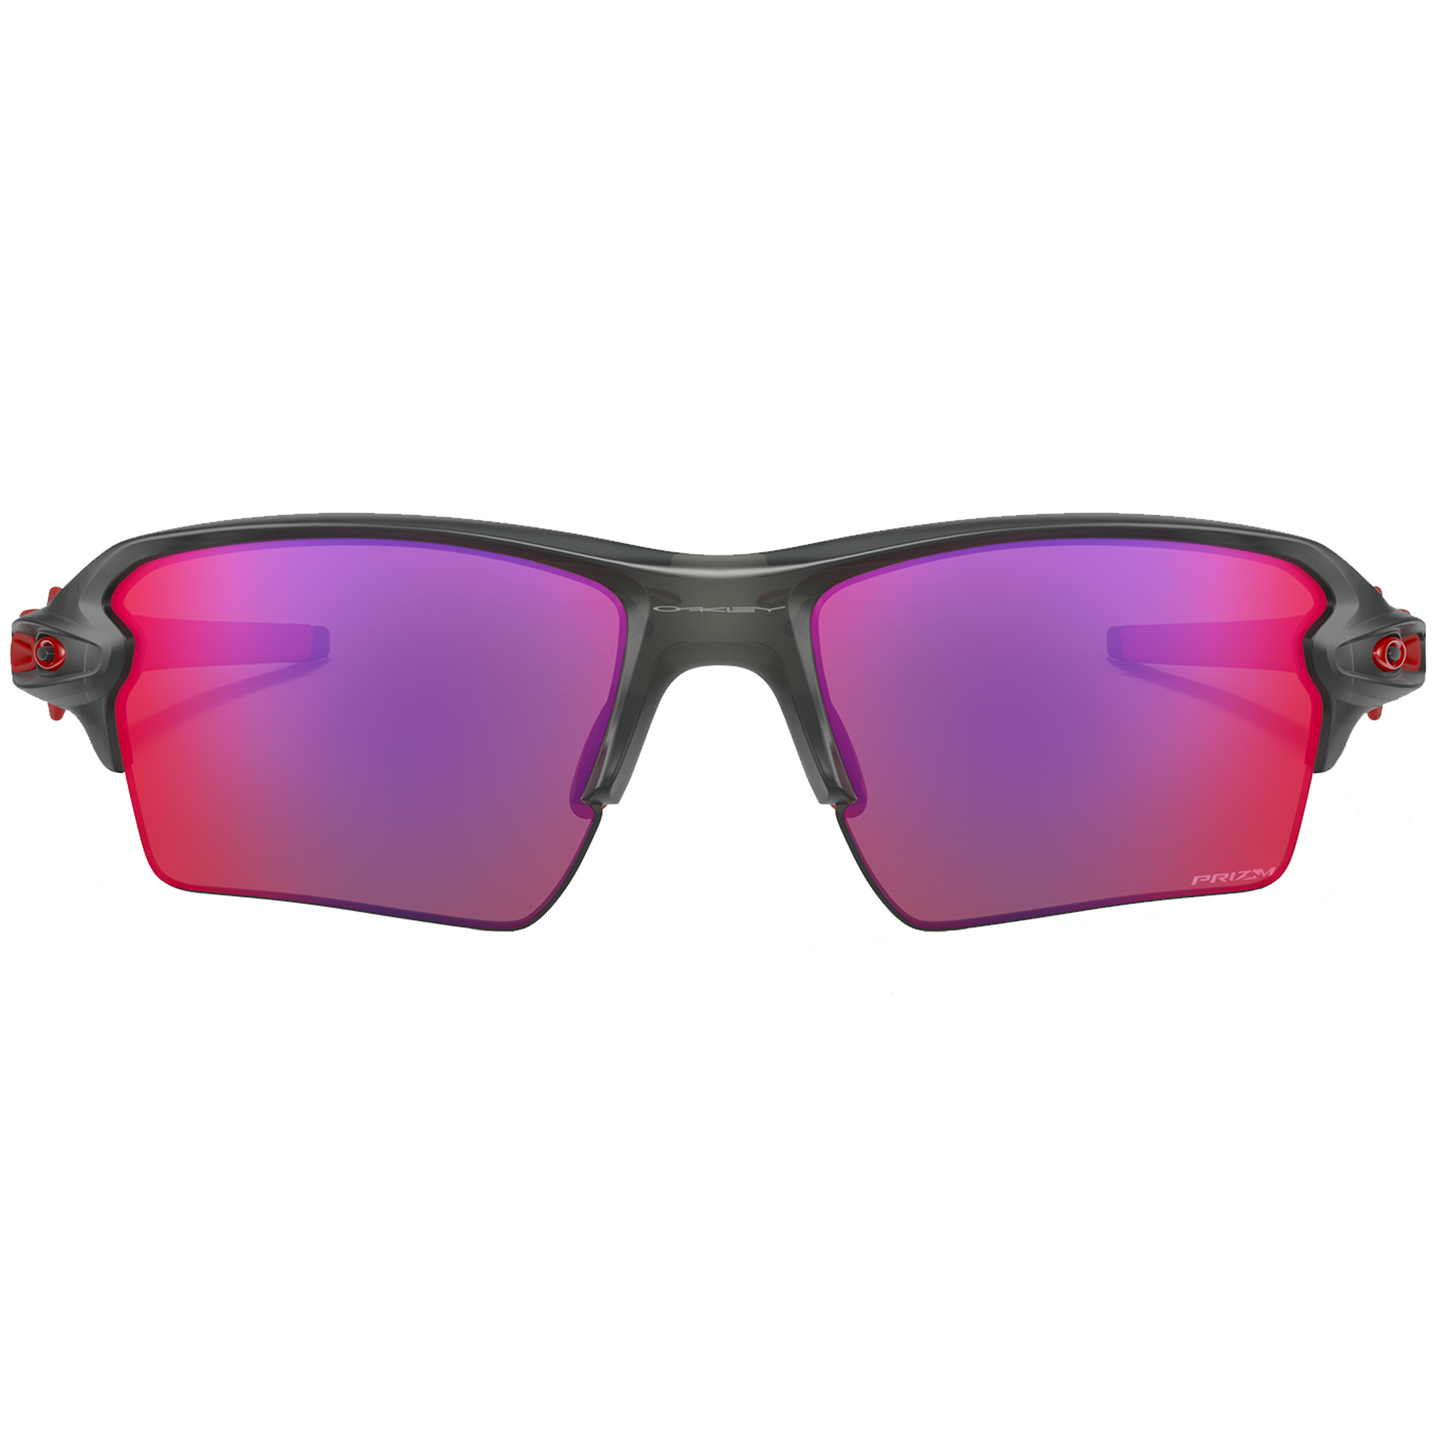 Oakley Flak 2.0 XL Sunglasses (Matte Grey Smoke) Prizm Road Lens - Free Case